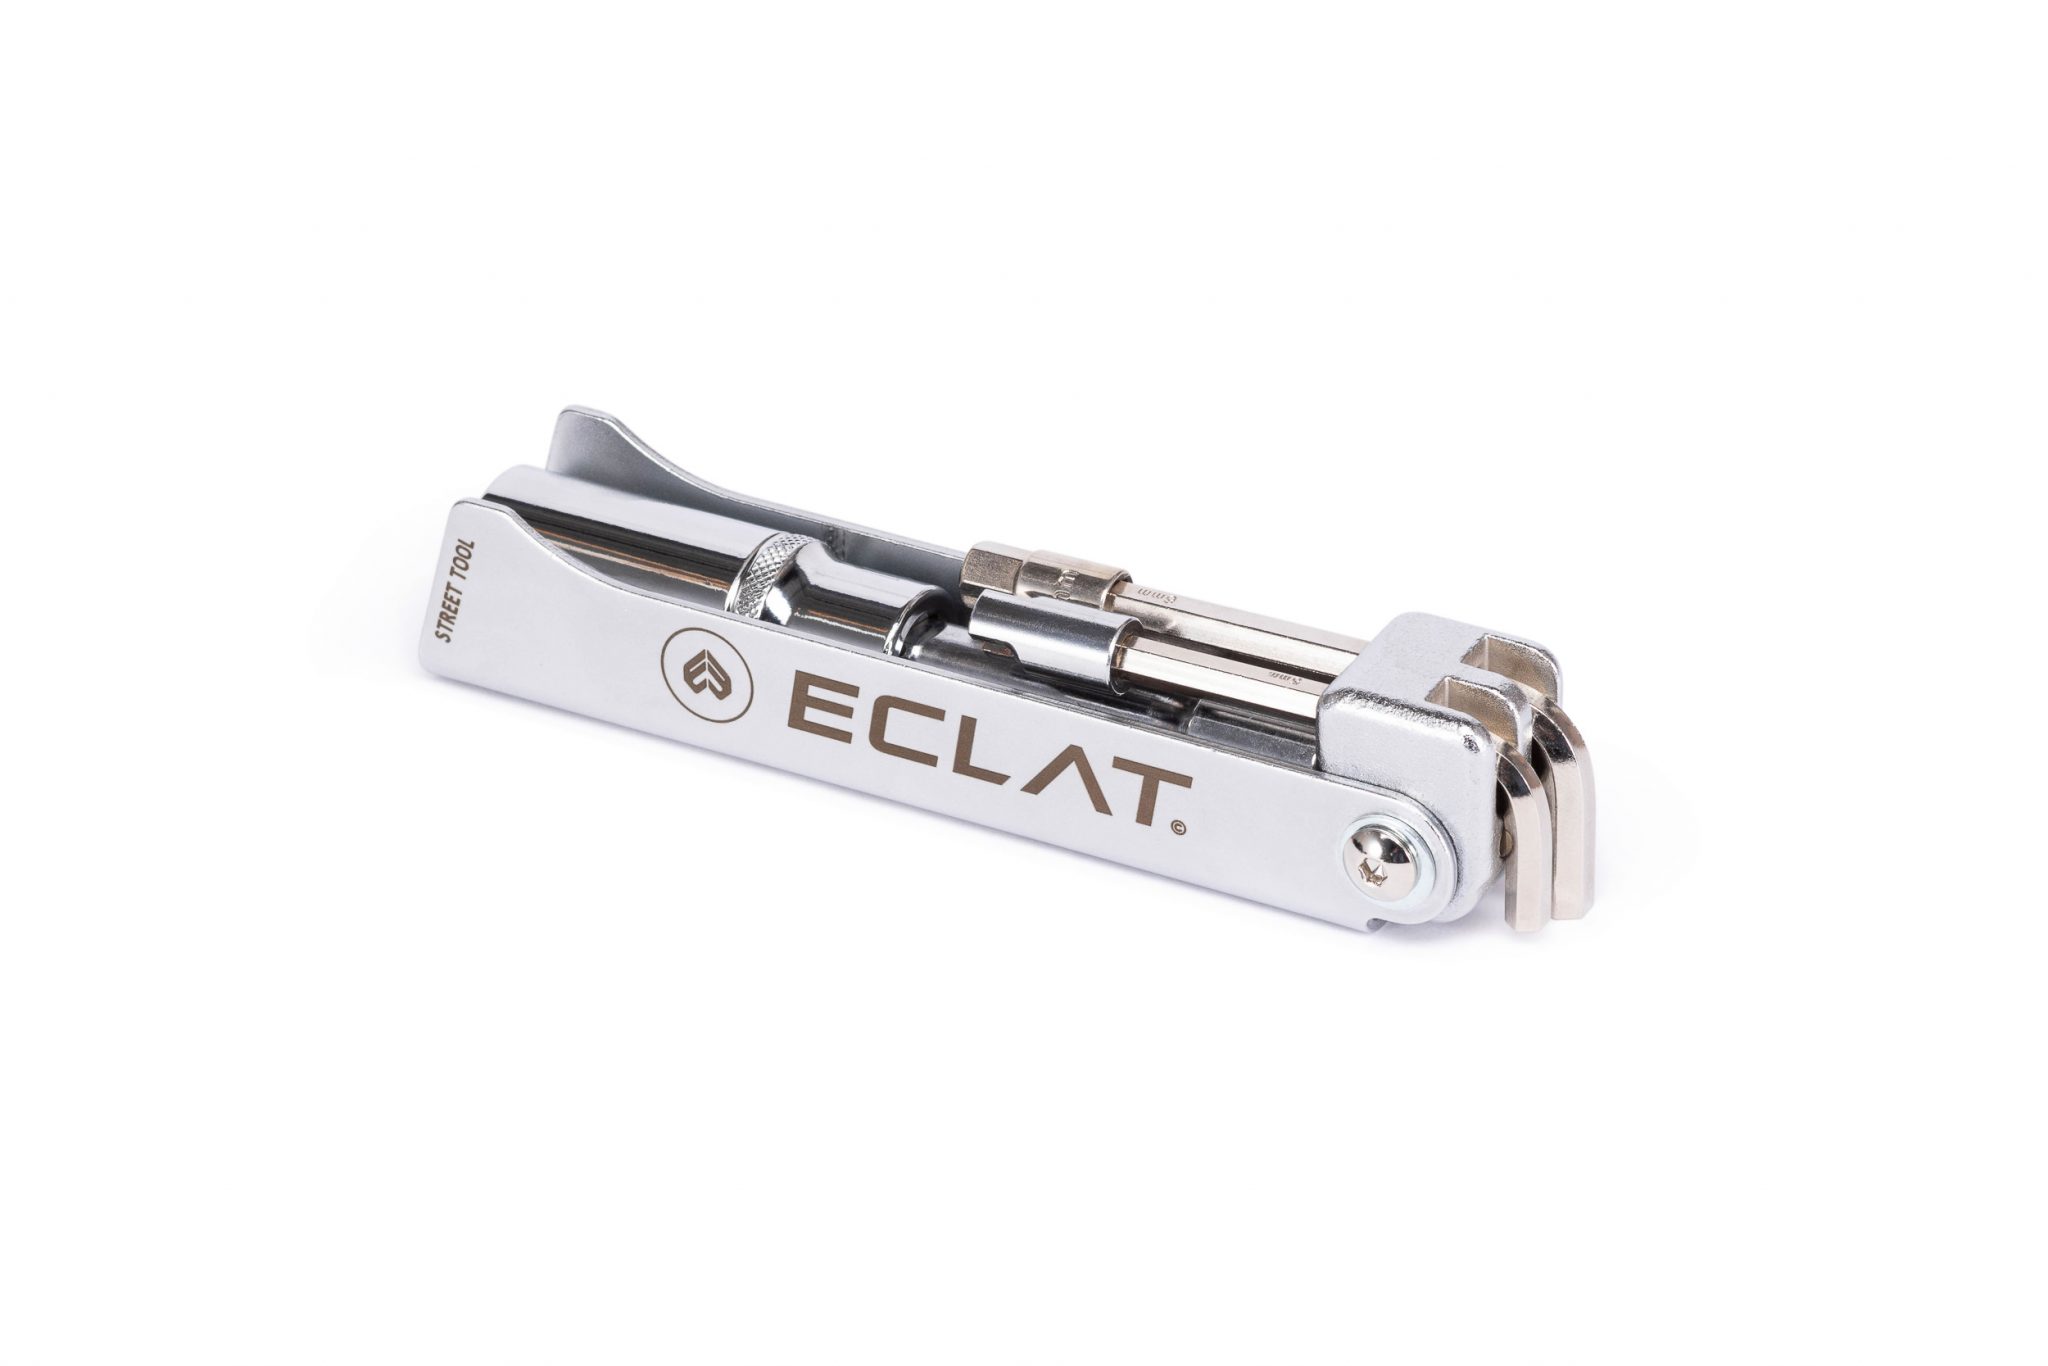 Eclat_Street_tool-01-2048x1366